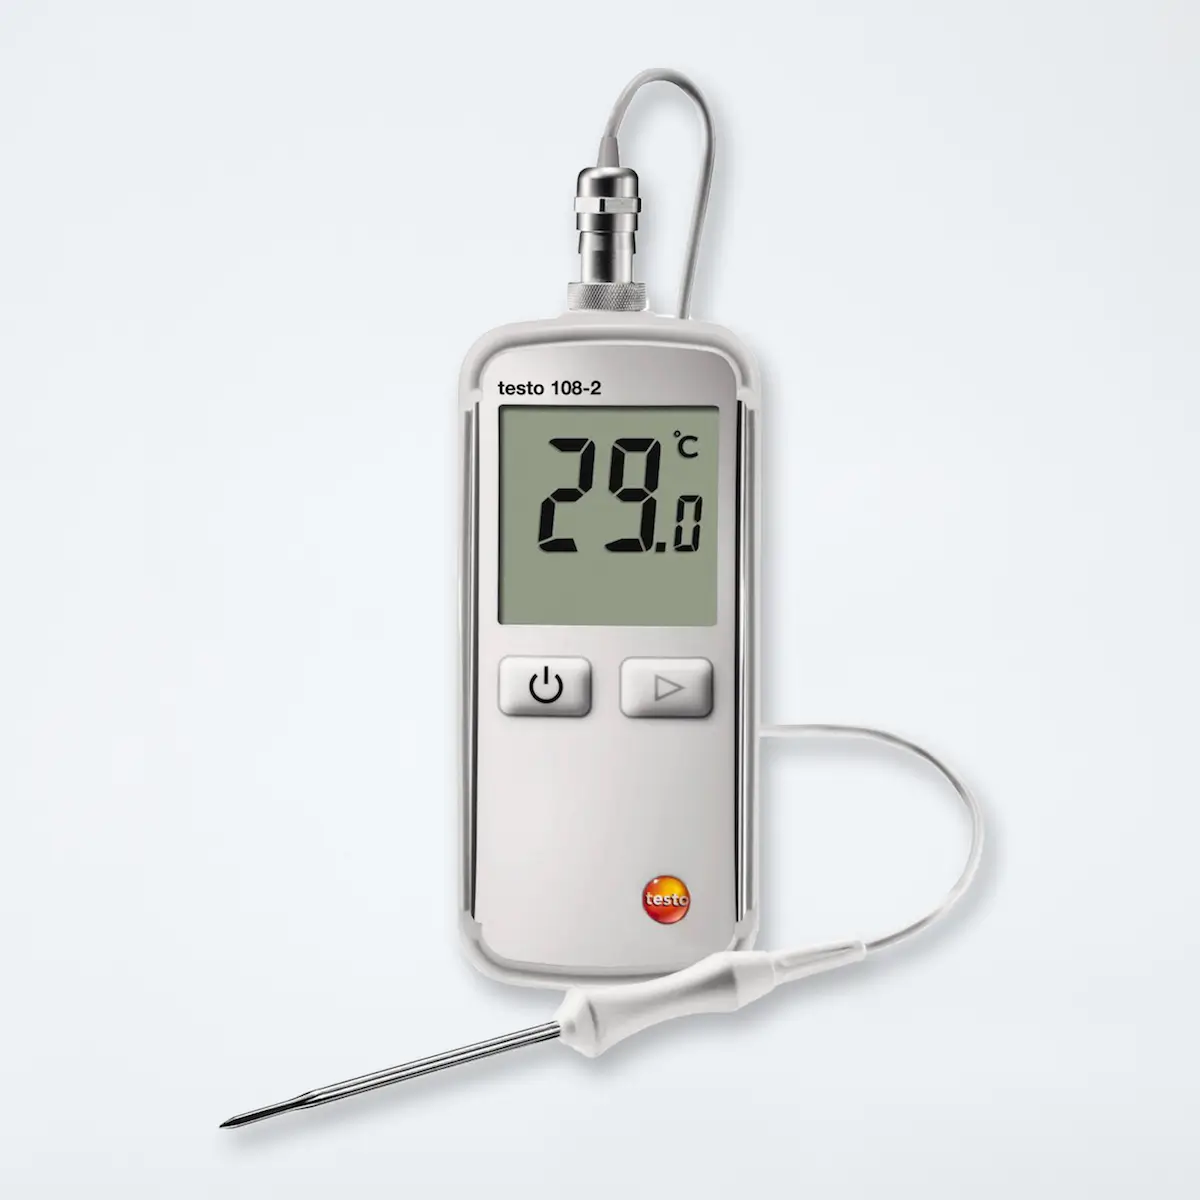 Profi-Thermometer Testo 108-2